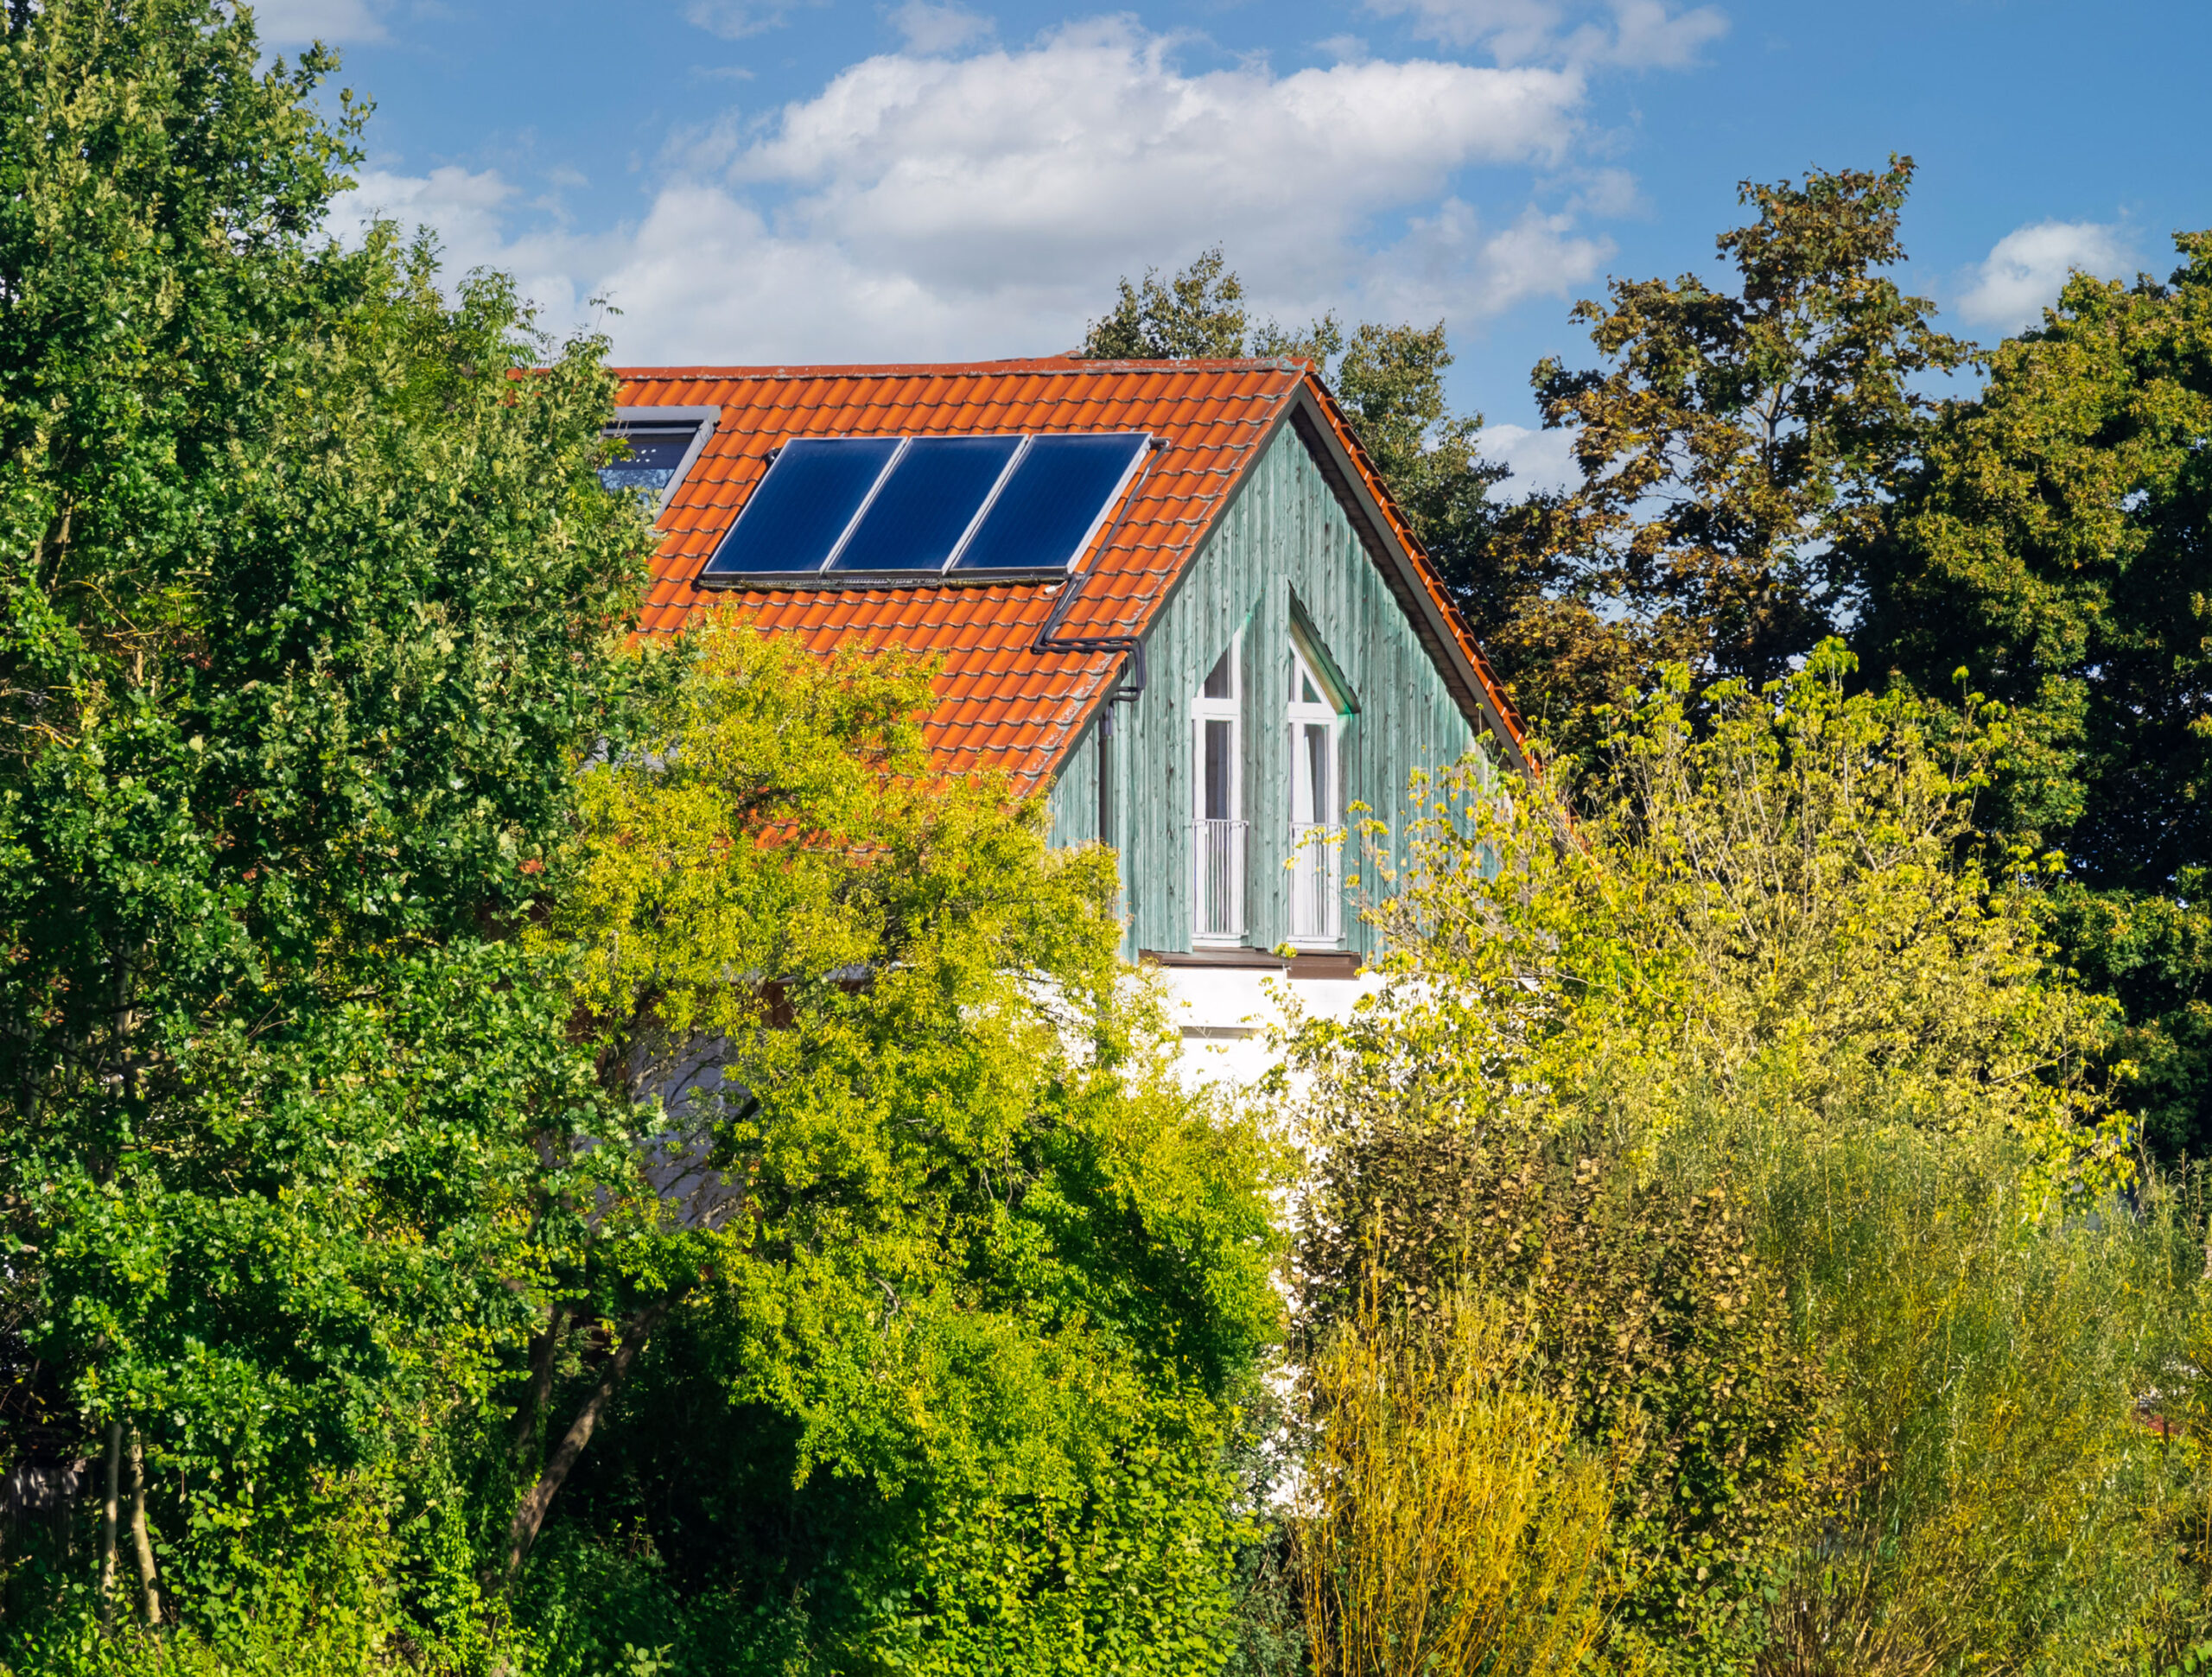 Eigenheim kombiniert Wärmepumpe und Solarthermie für nachhaltiges Heizen